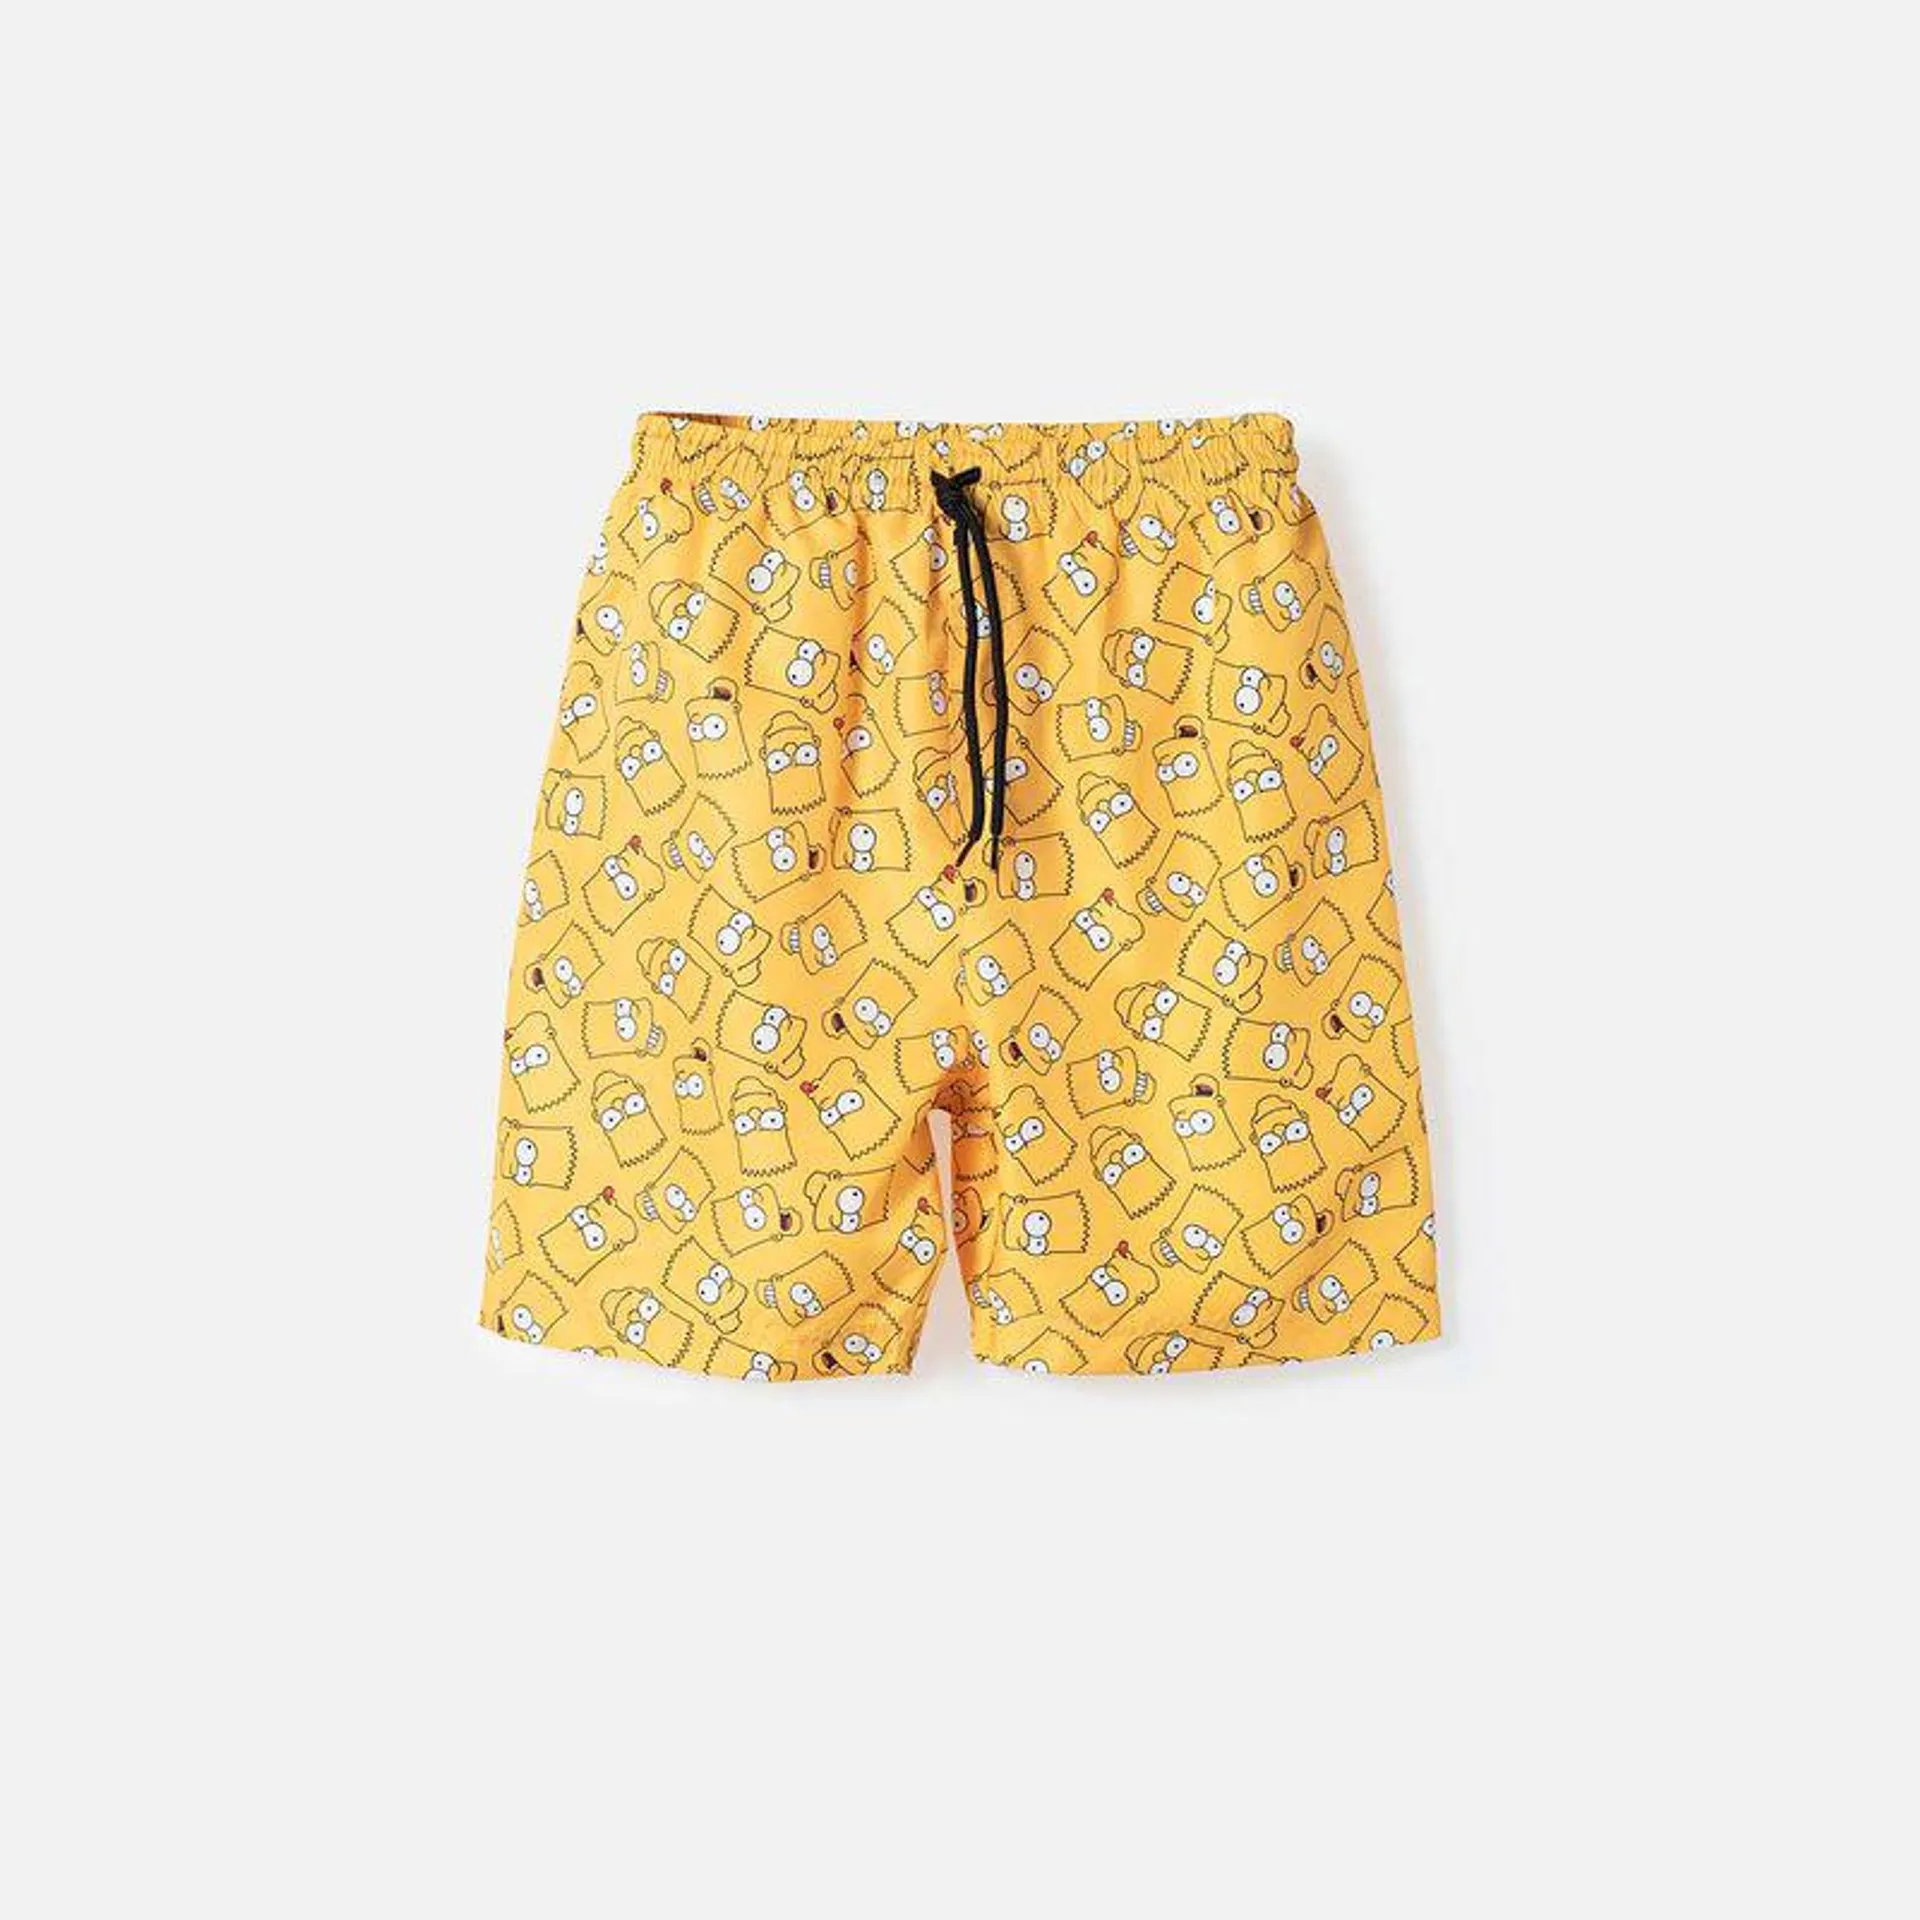 Pantaloneta de baño Bart Simpson amarilla con cintura elástica para niño